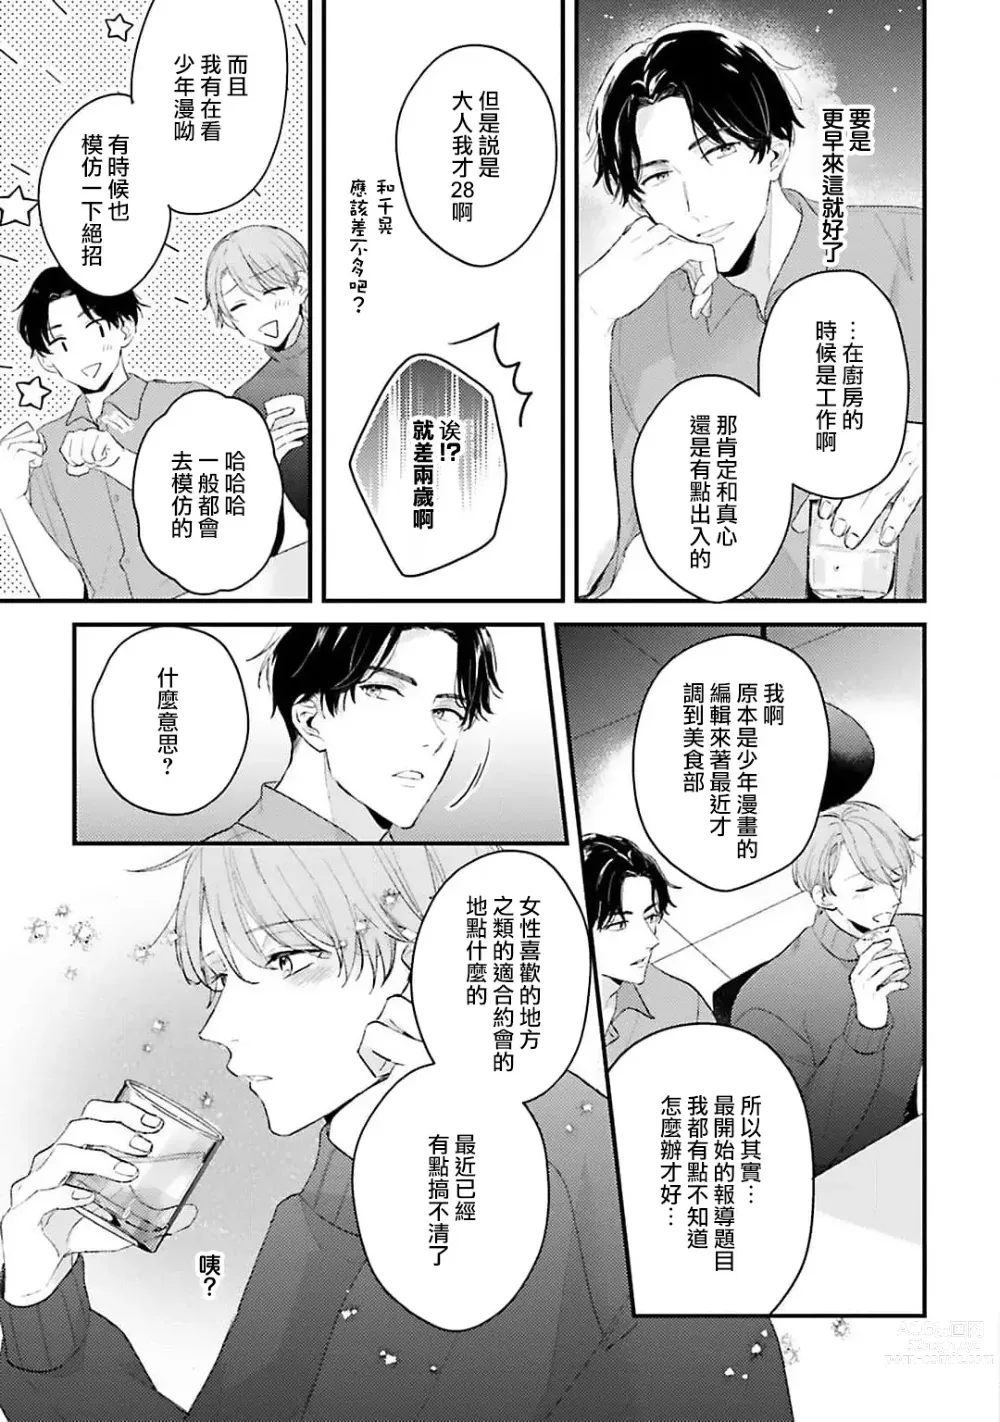 Page 20 of manga 绽放的恋爱皆为醉与甜1